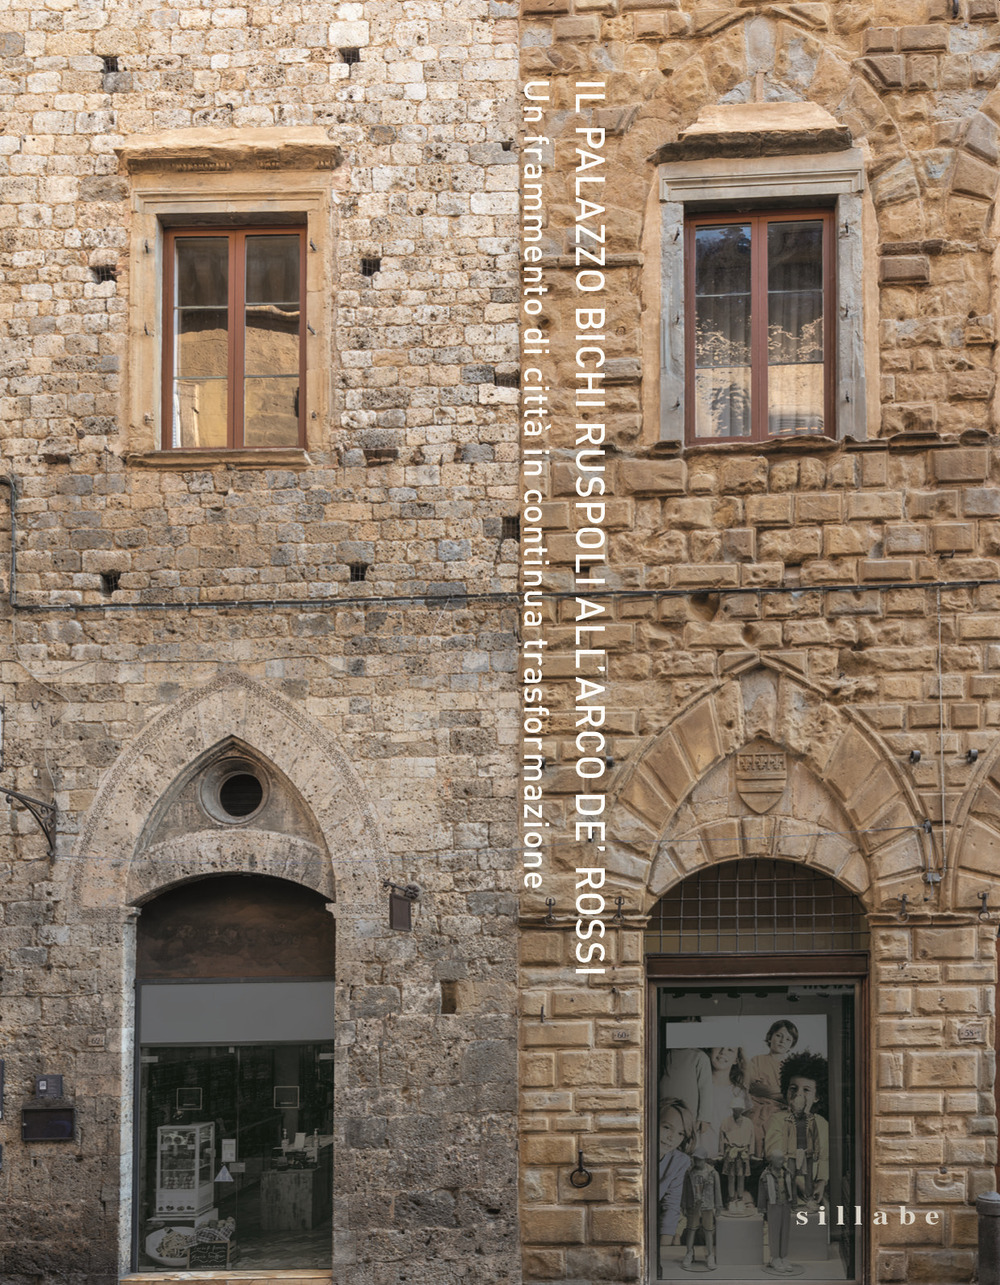 Il Palazzo Bichi Ruspoli all'Arco de' Rossi. Un frammento di città in continua trasformazione